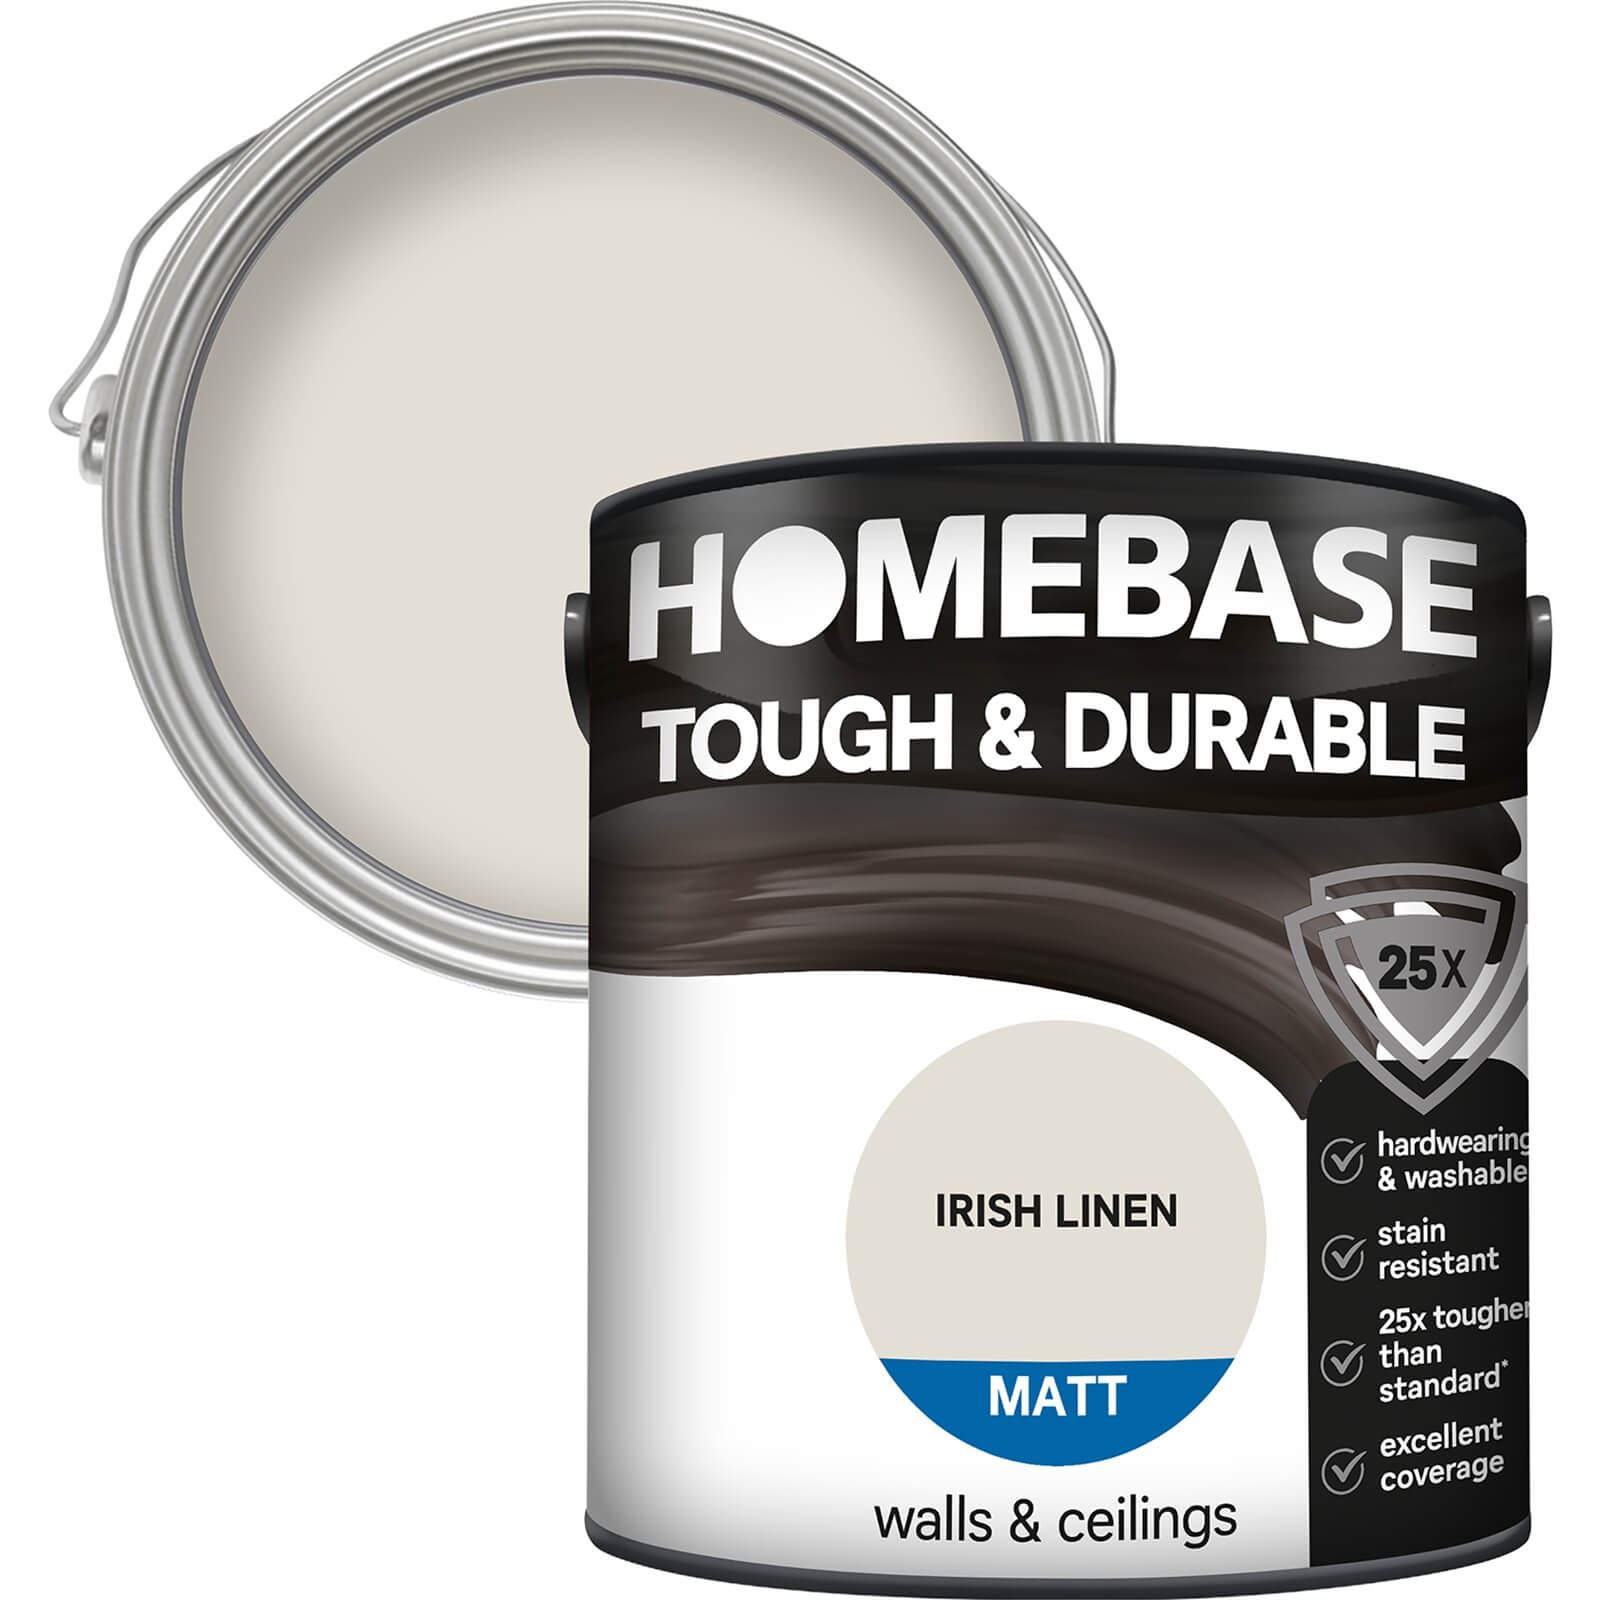 Homebase Tough & Durable Matt Paint Irish Linen - 2.5L